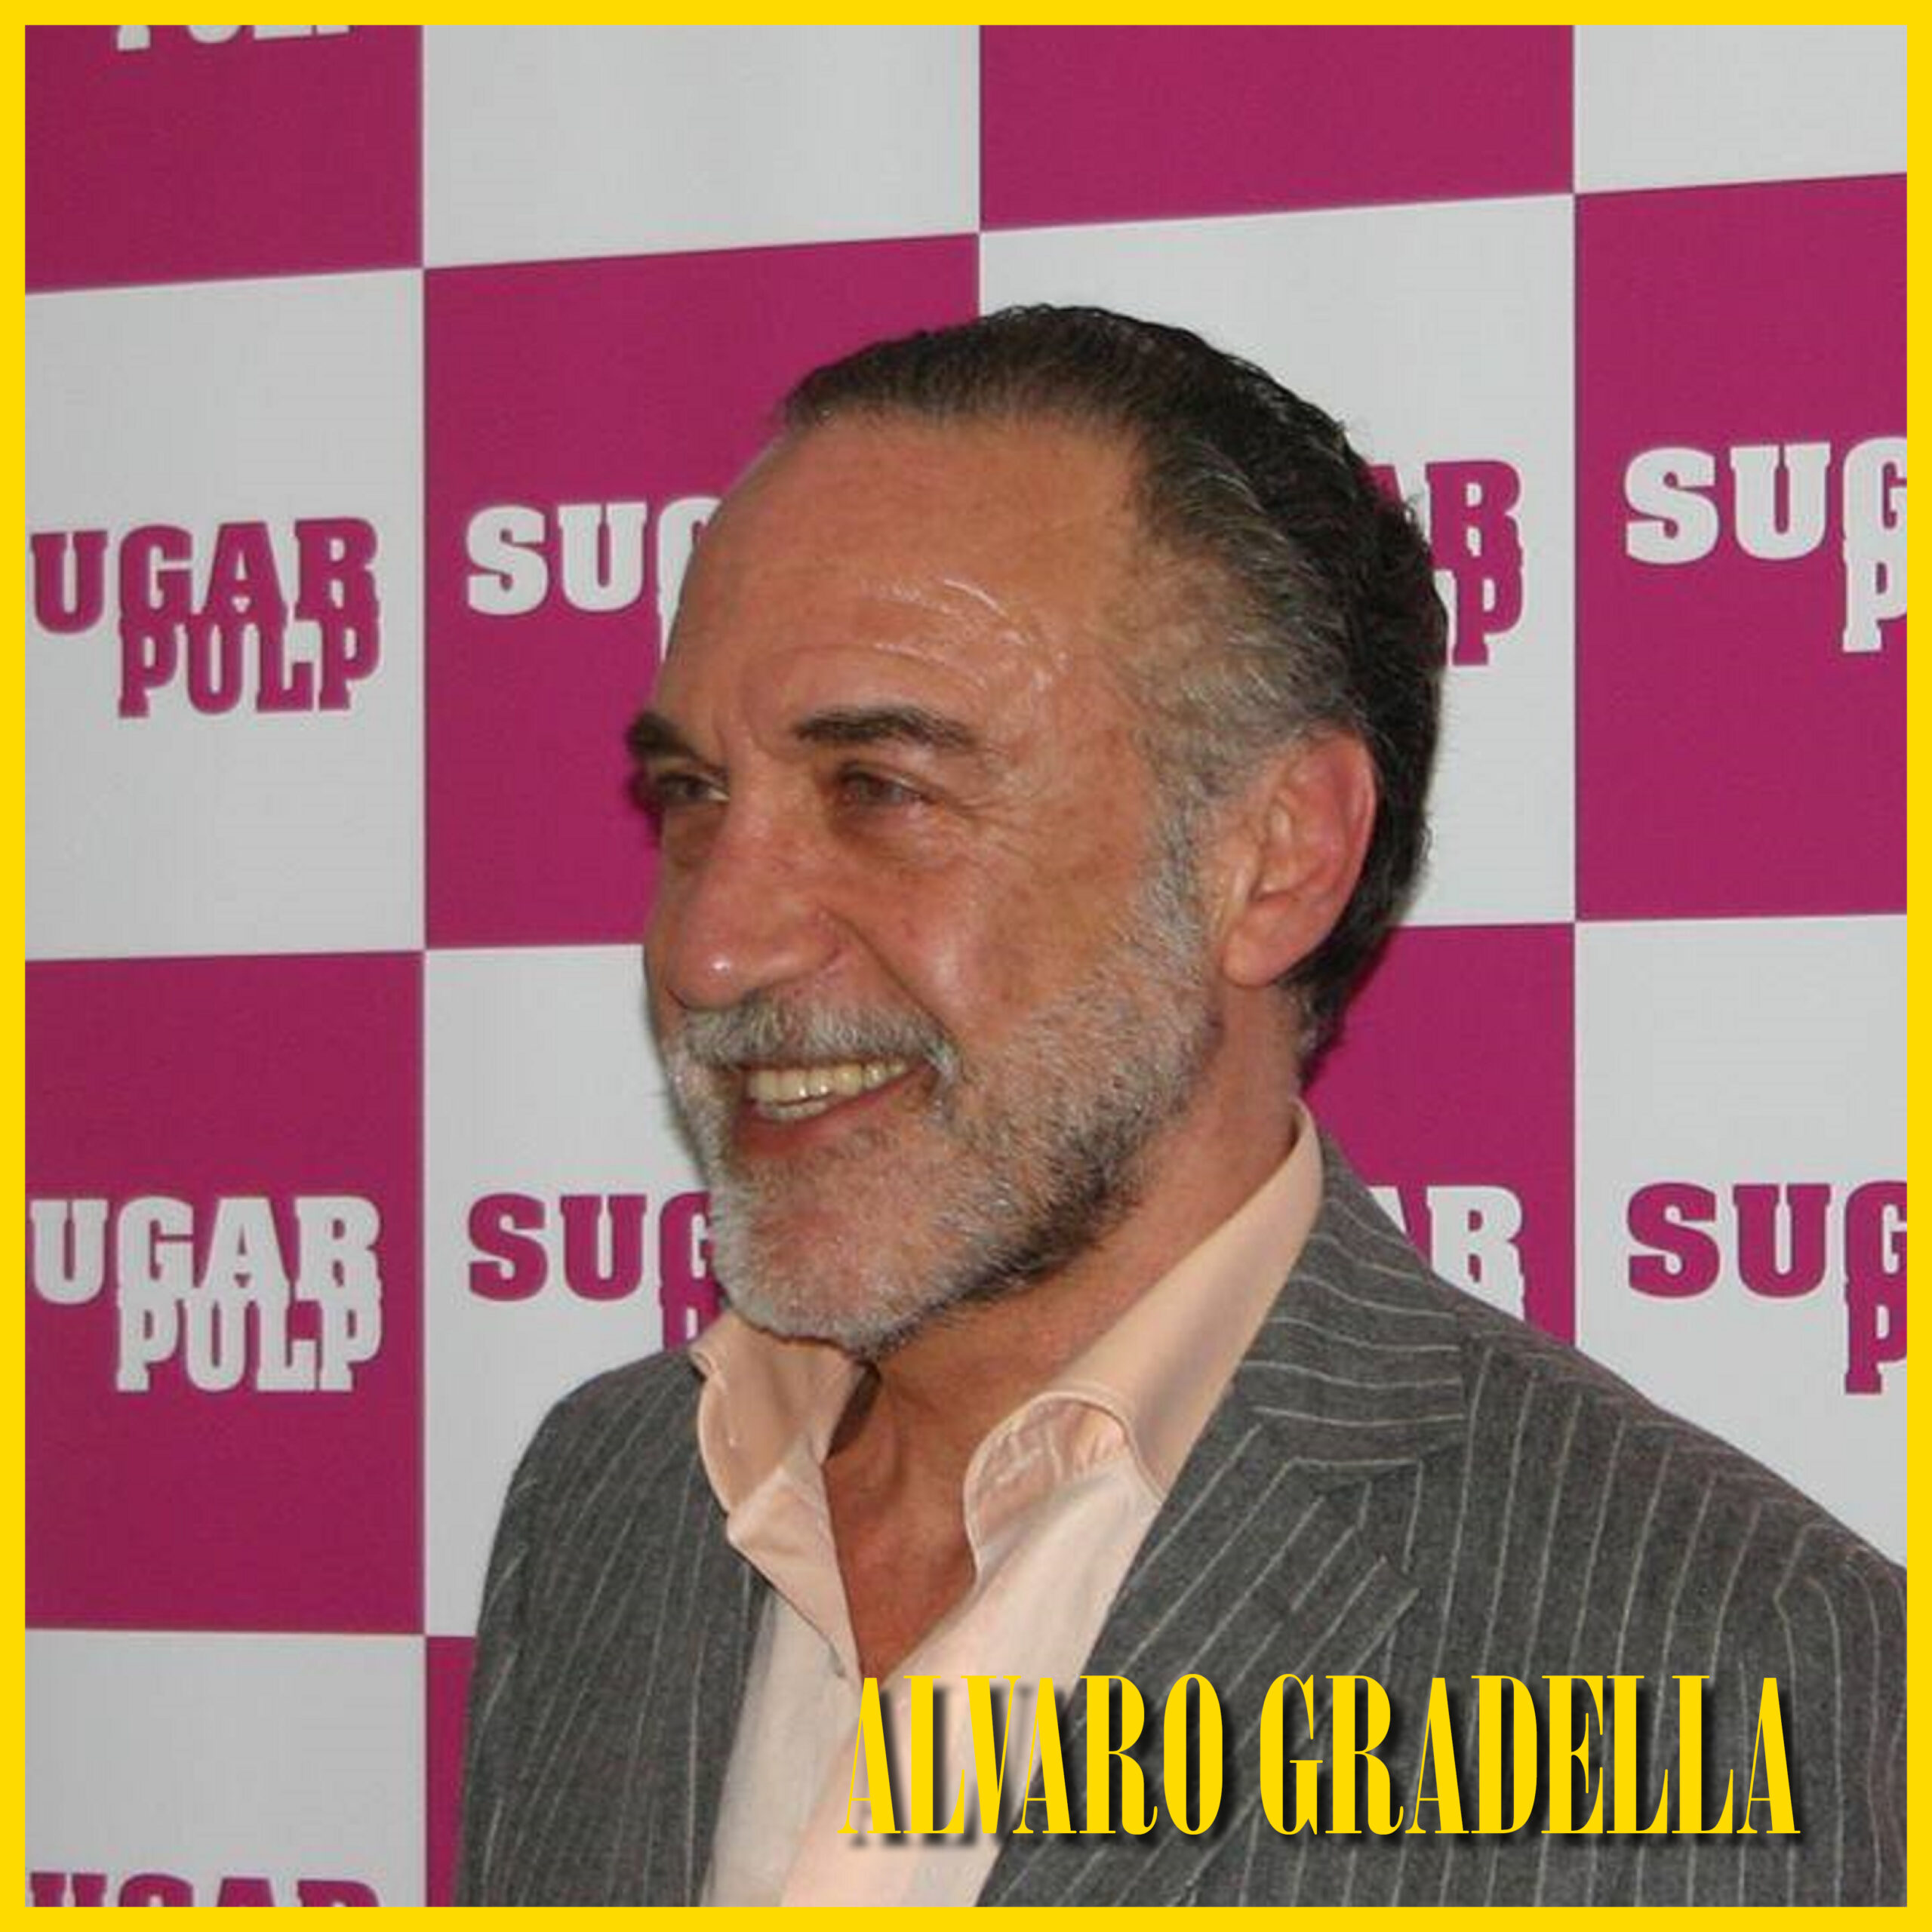 Alvaro Gradella